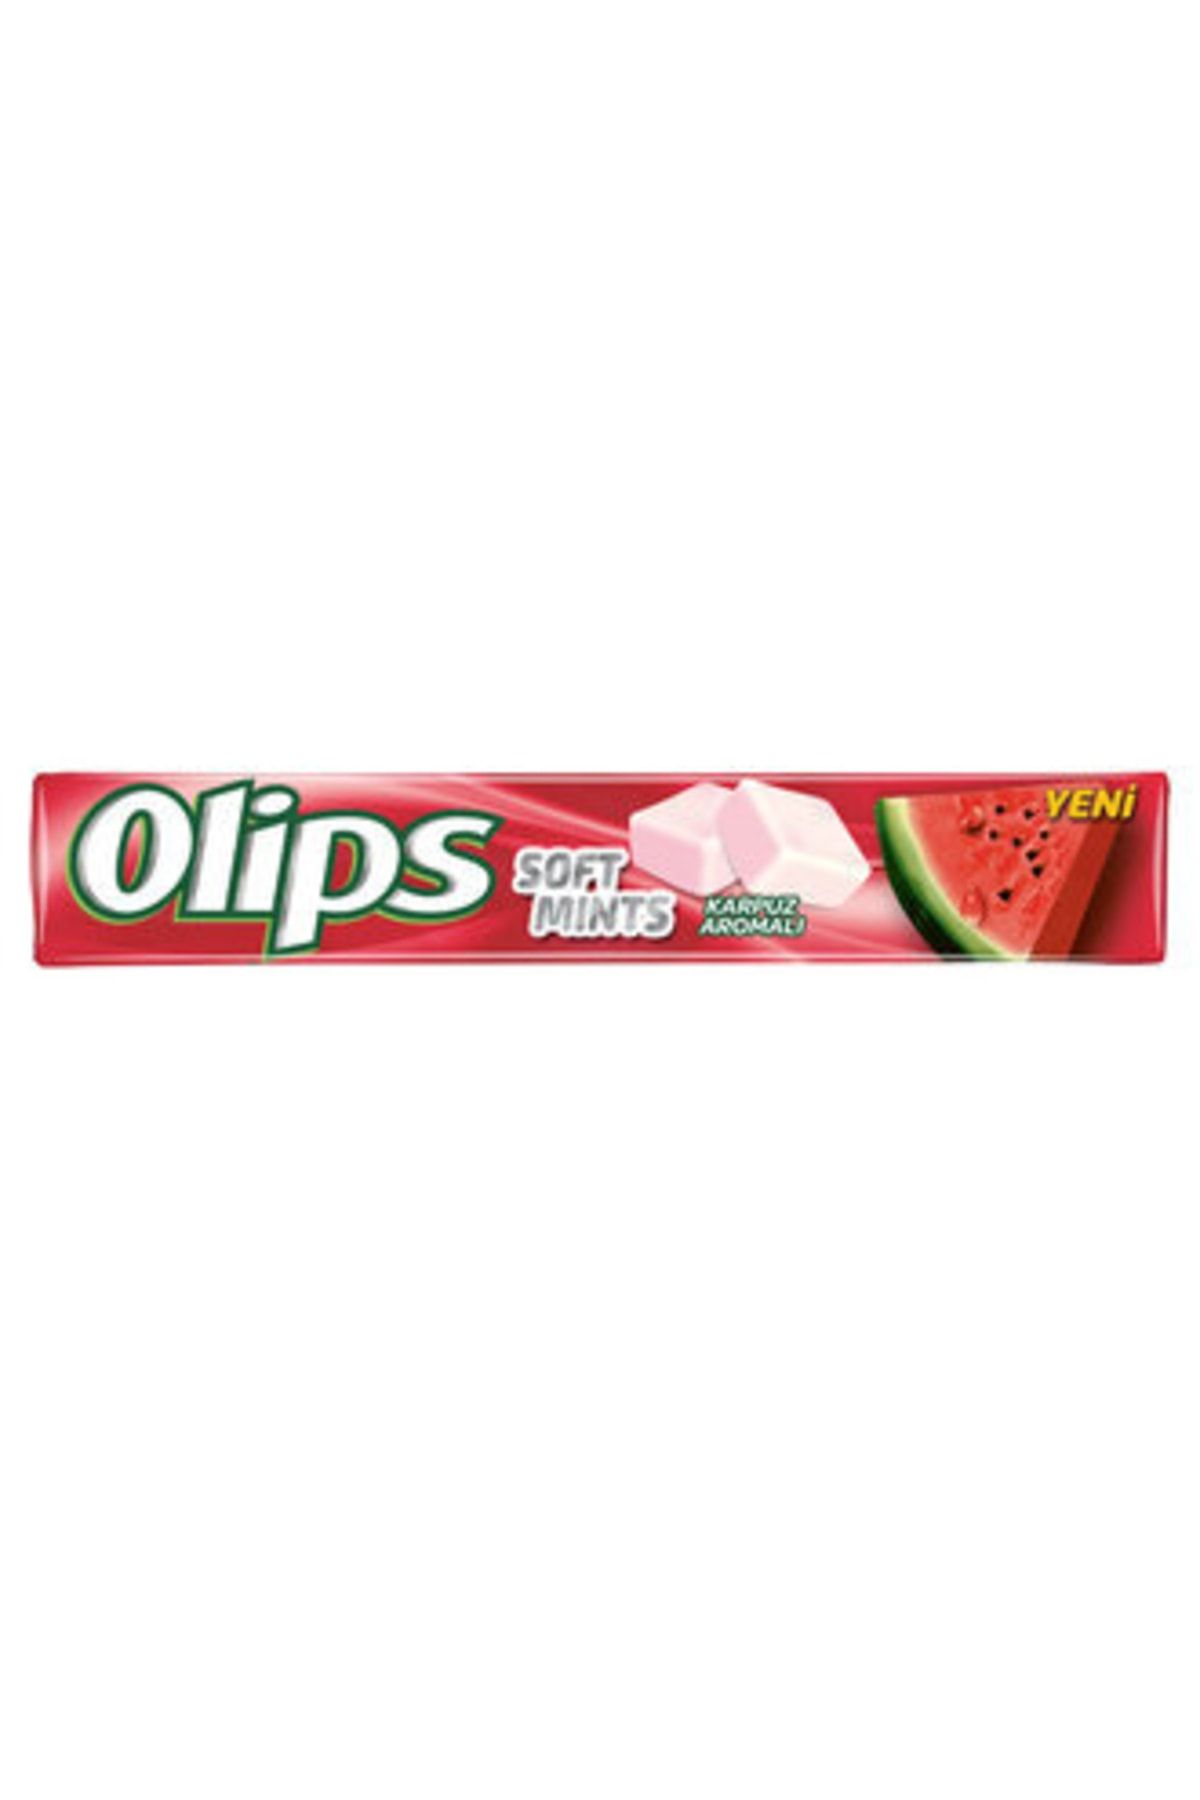 Olips Soft Mints Karpuz Aromalı Yumuşak Şekerleme 47 G * 10 Adet